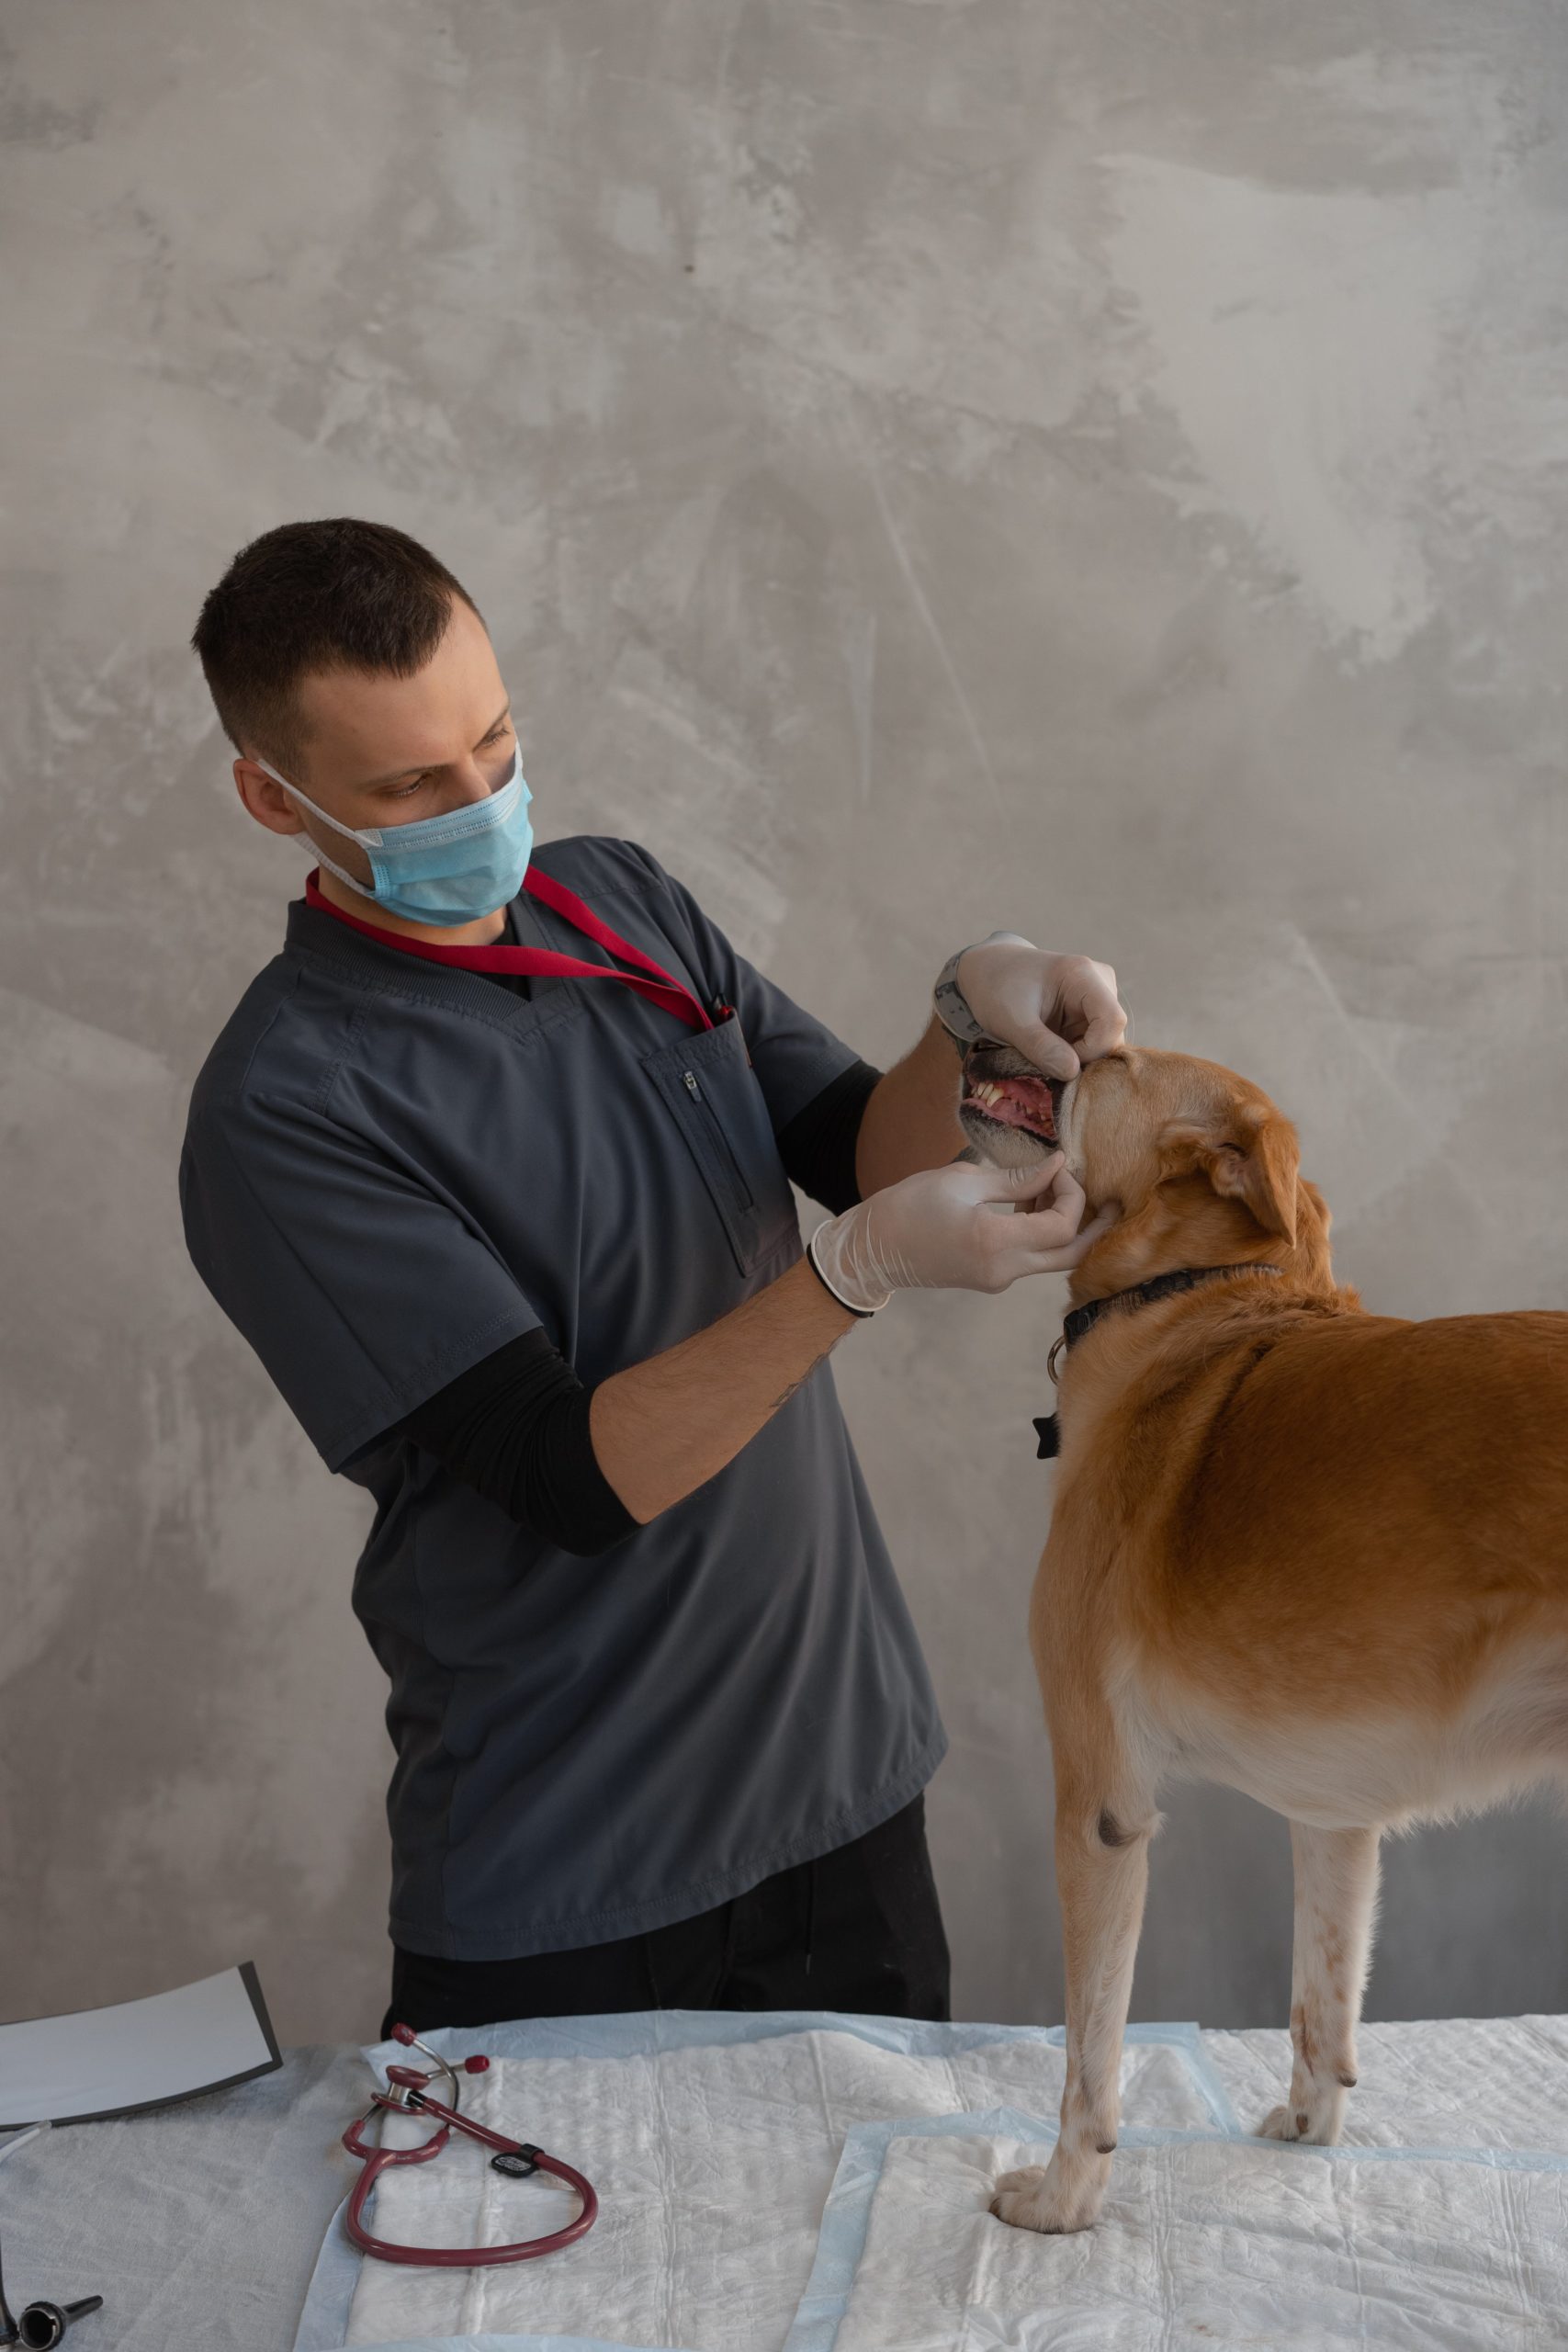 Dierenarts onderzoekt hond op dermatomyositis